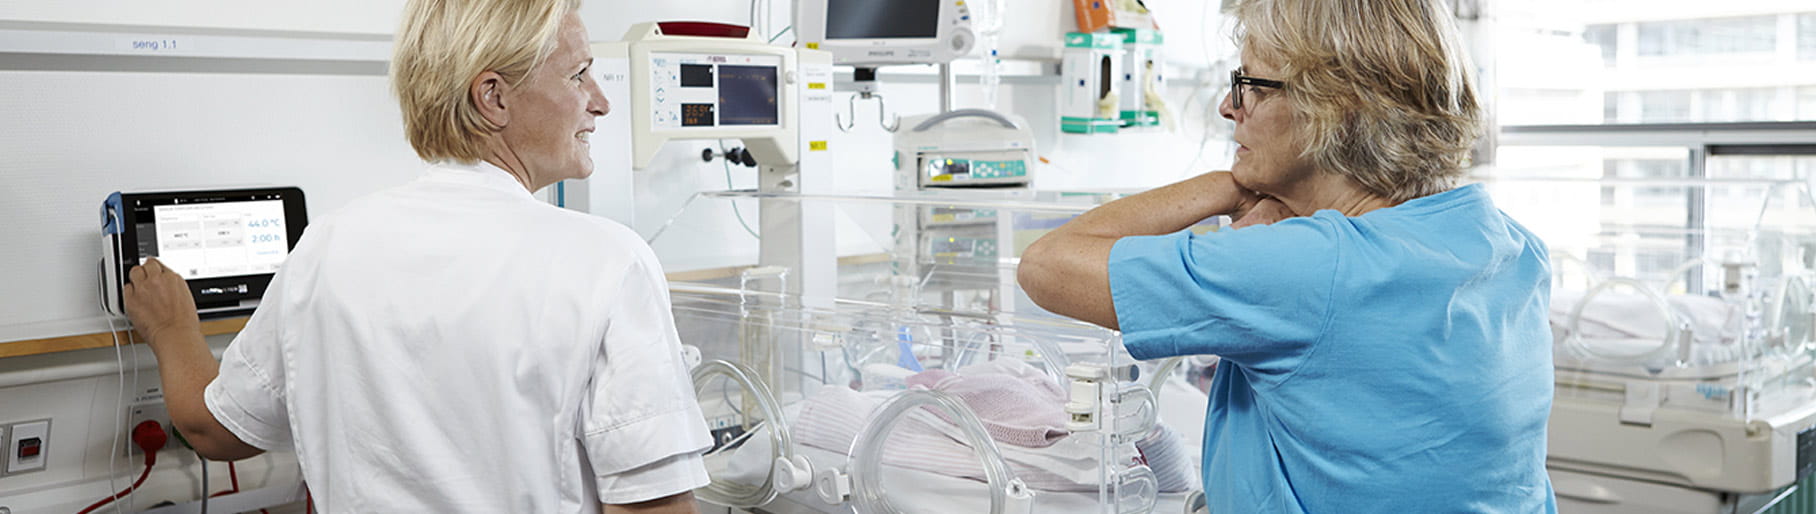 Kórházi helyzet - két ápoló az újszülött intenzív osztályon, a Radiometer transcutan monitorát használva